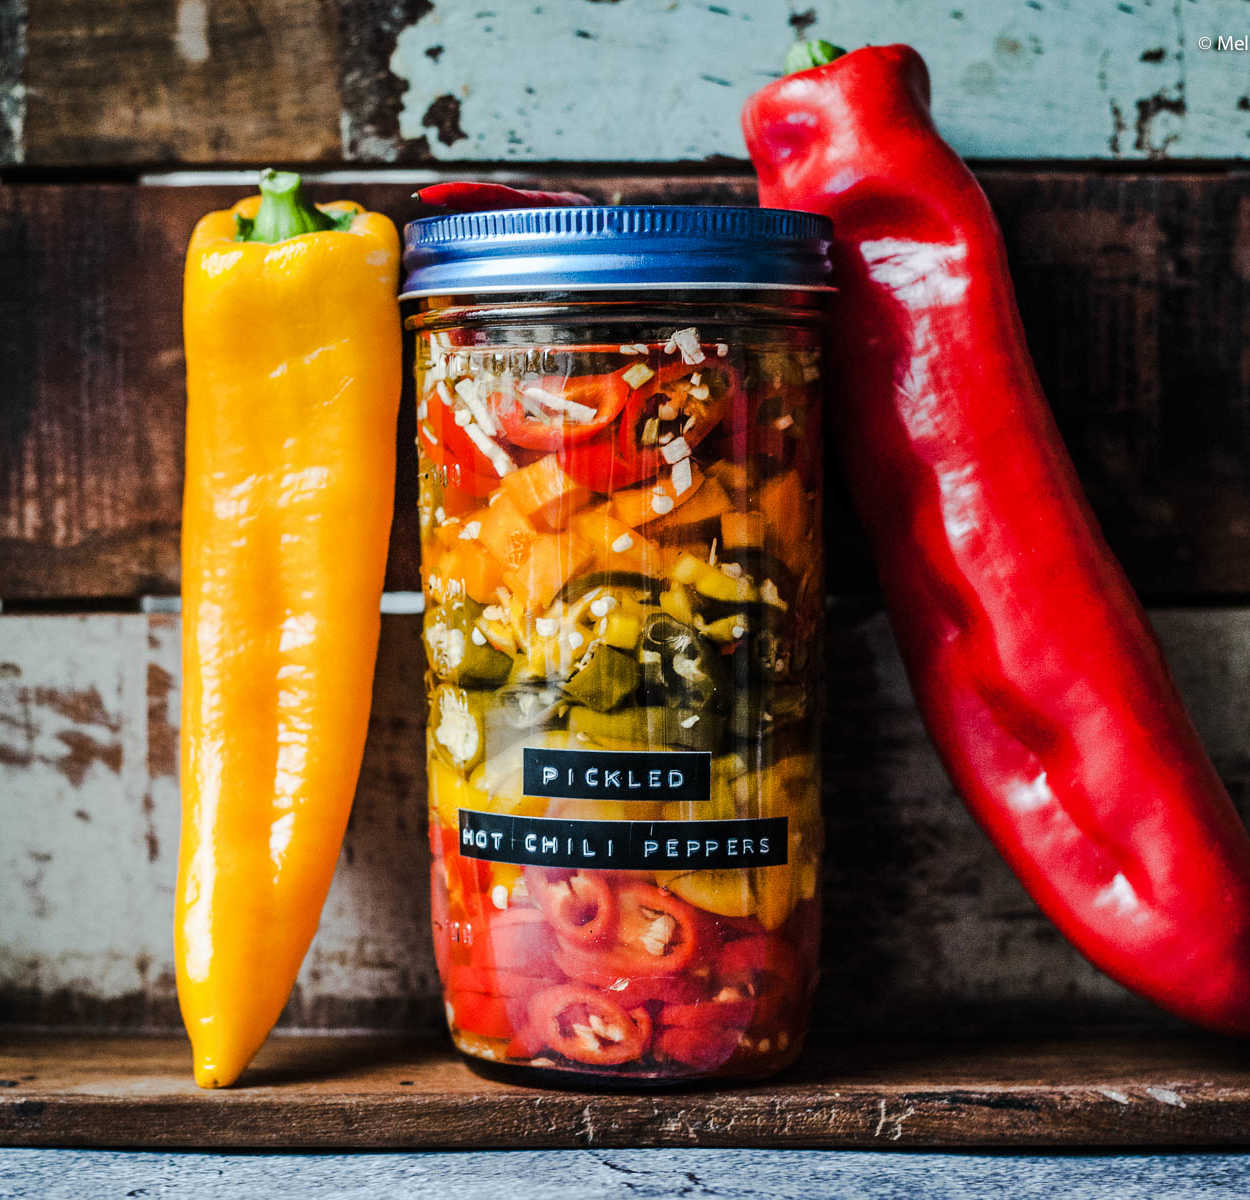 Pickled Hot Chili Peppers - Selbst eingelegte scharfe Paprika und Peperoni | GourmetGuerilla.de